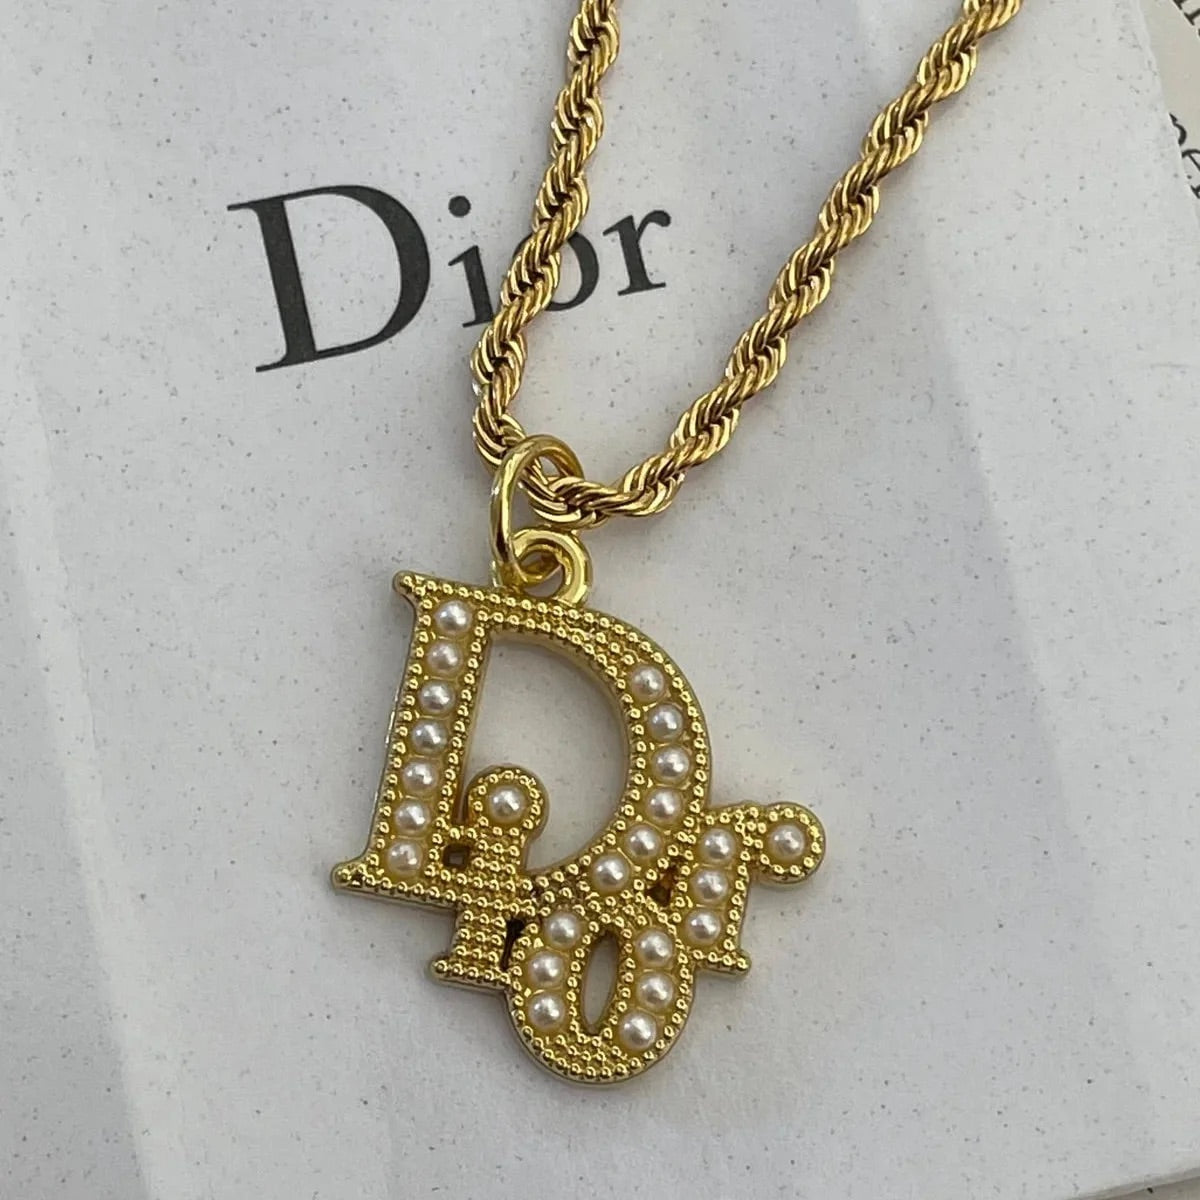 Repurposed Vintage Dior Necklace